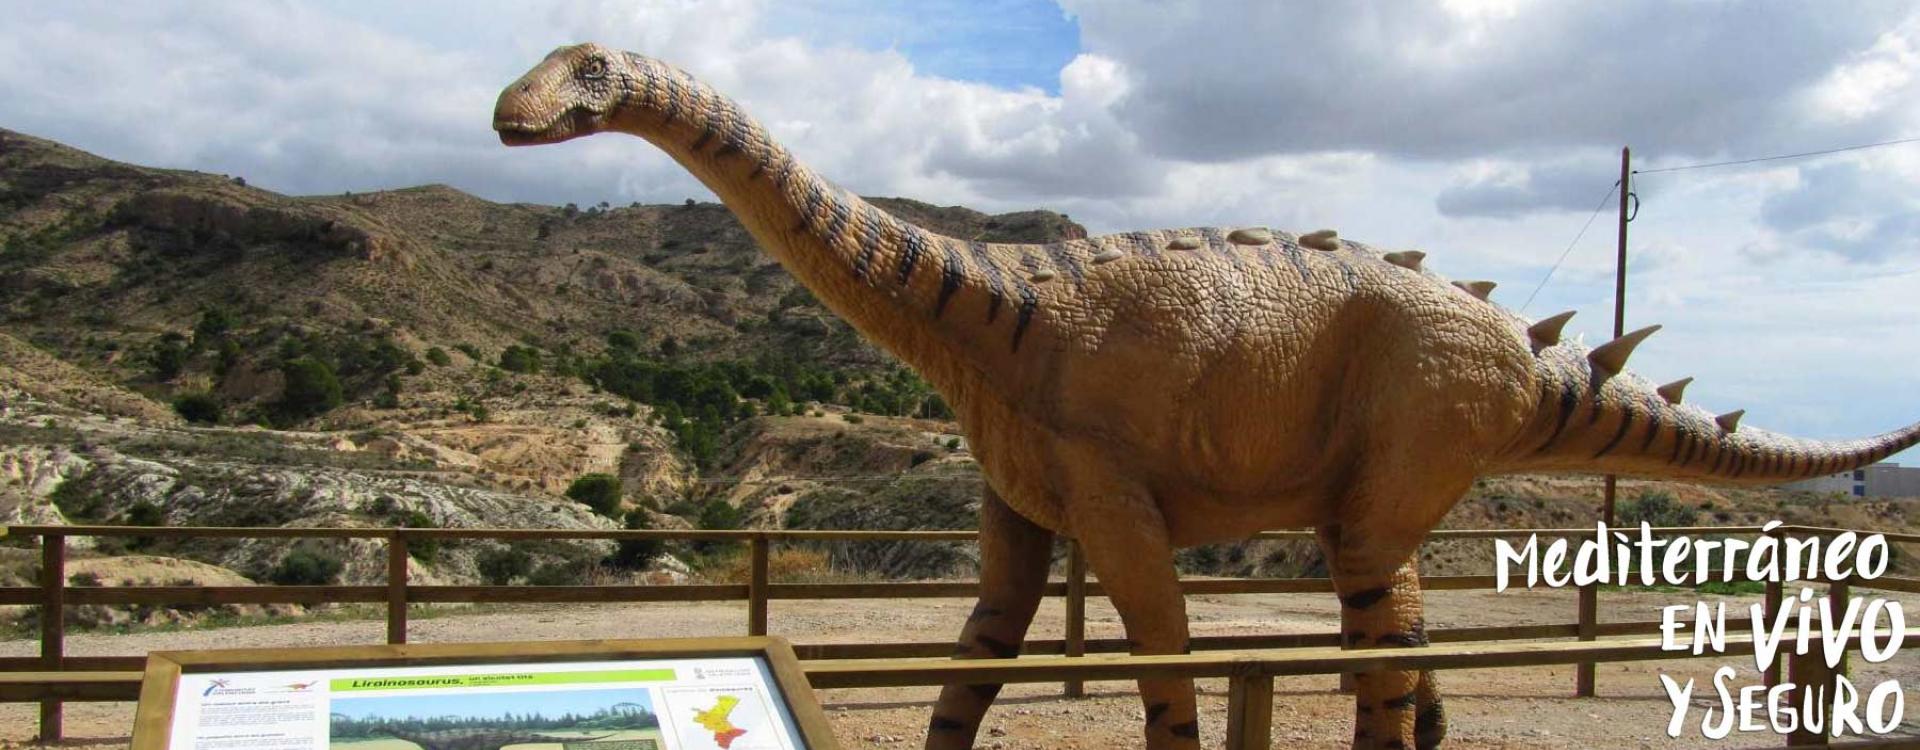 Dinosaur Trails Actividades Y Experiencias Comunitat Valenciana